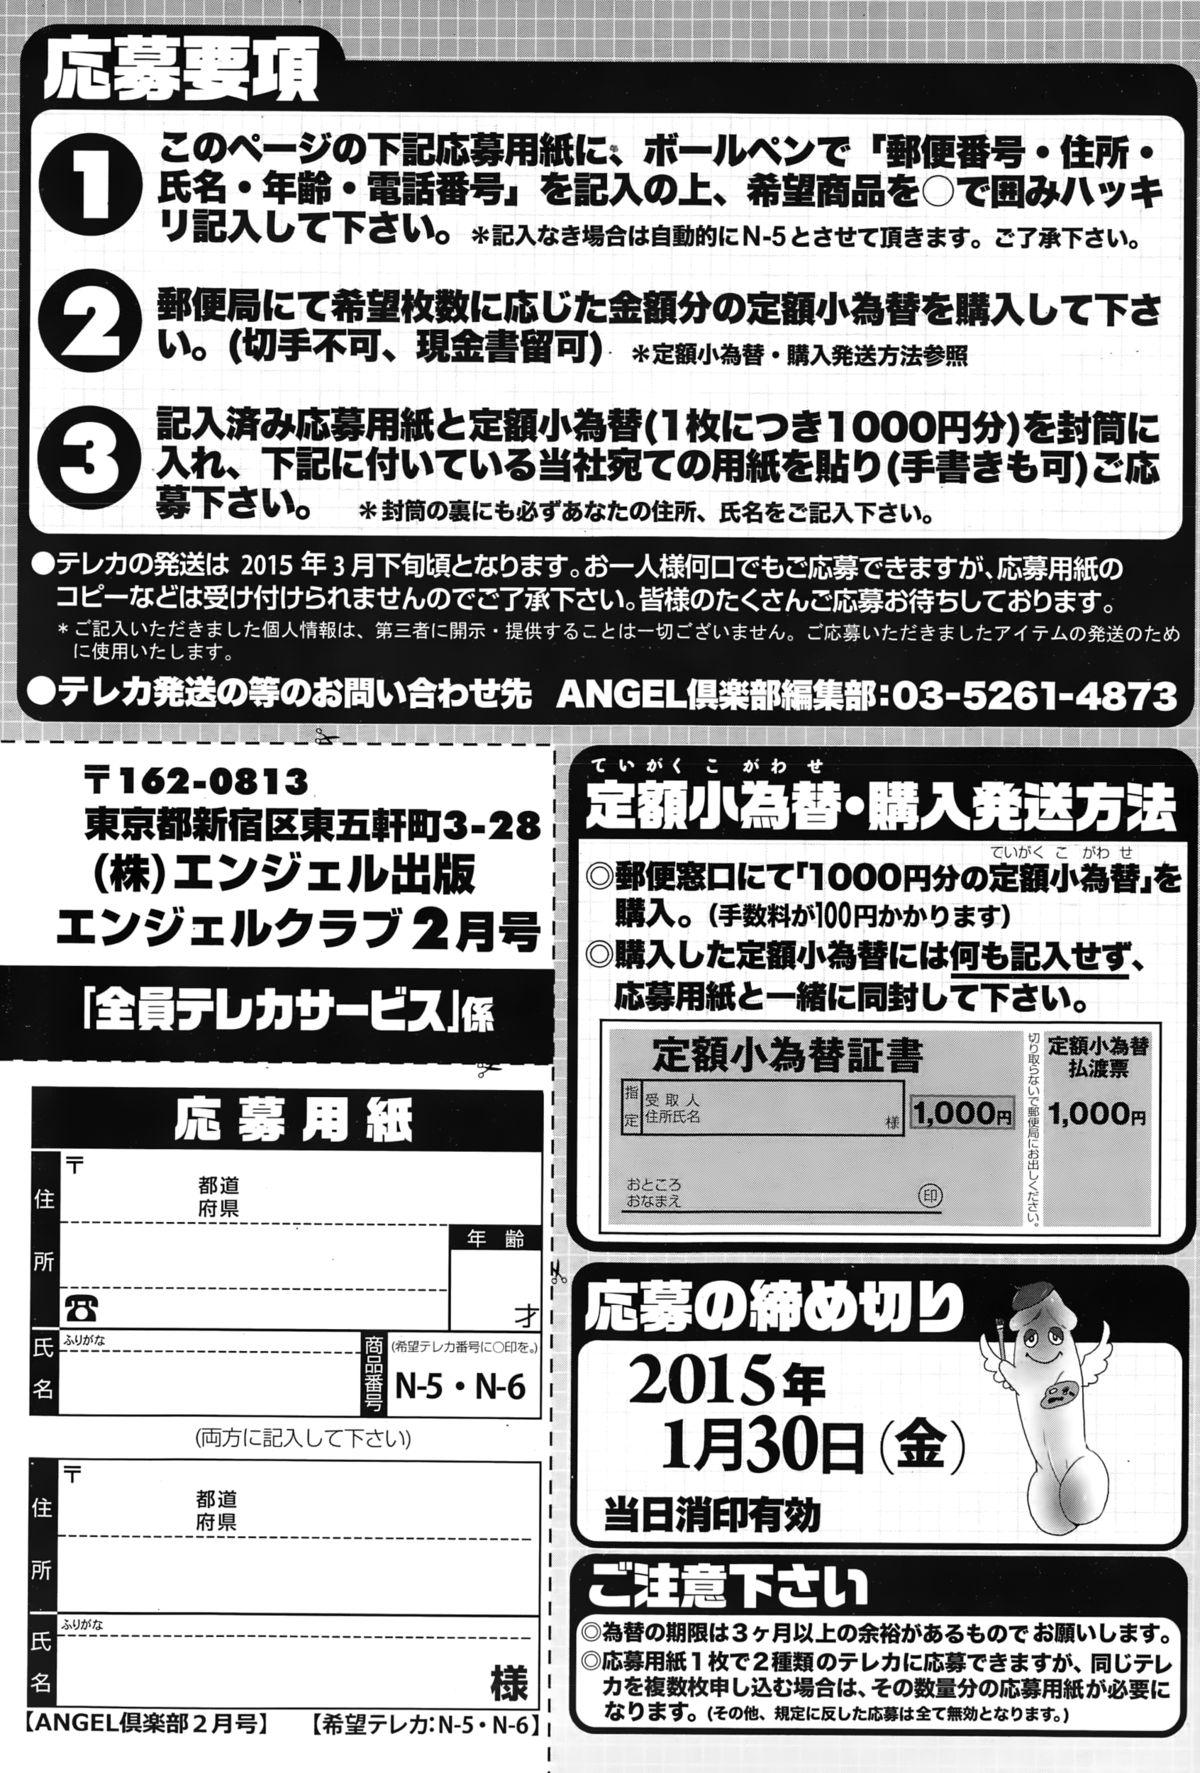 ANGEL Club 2015-02 206